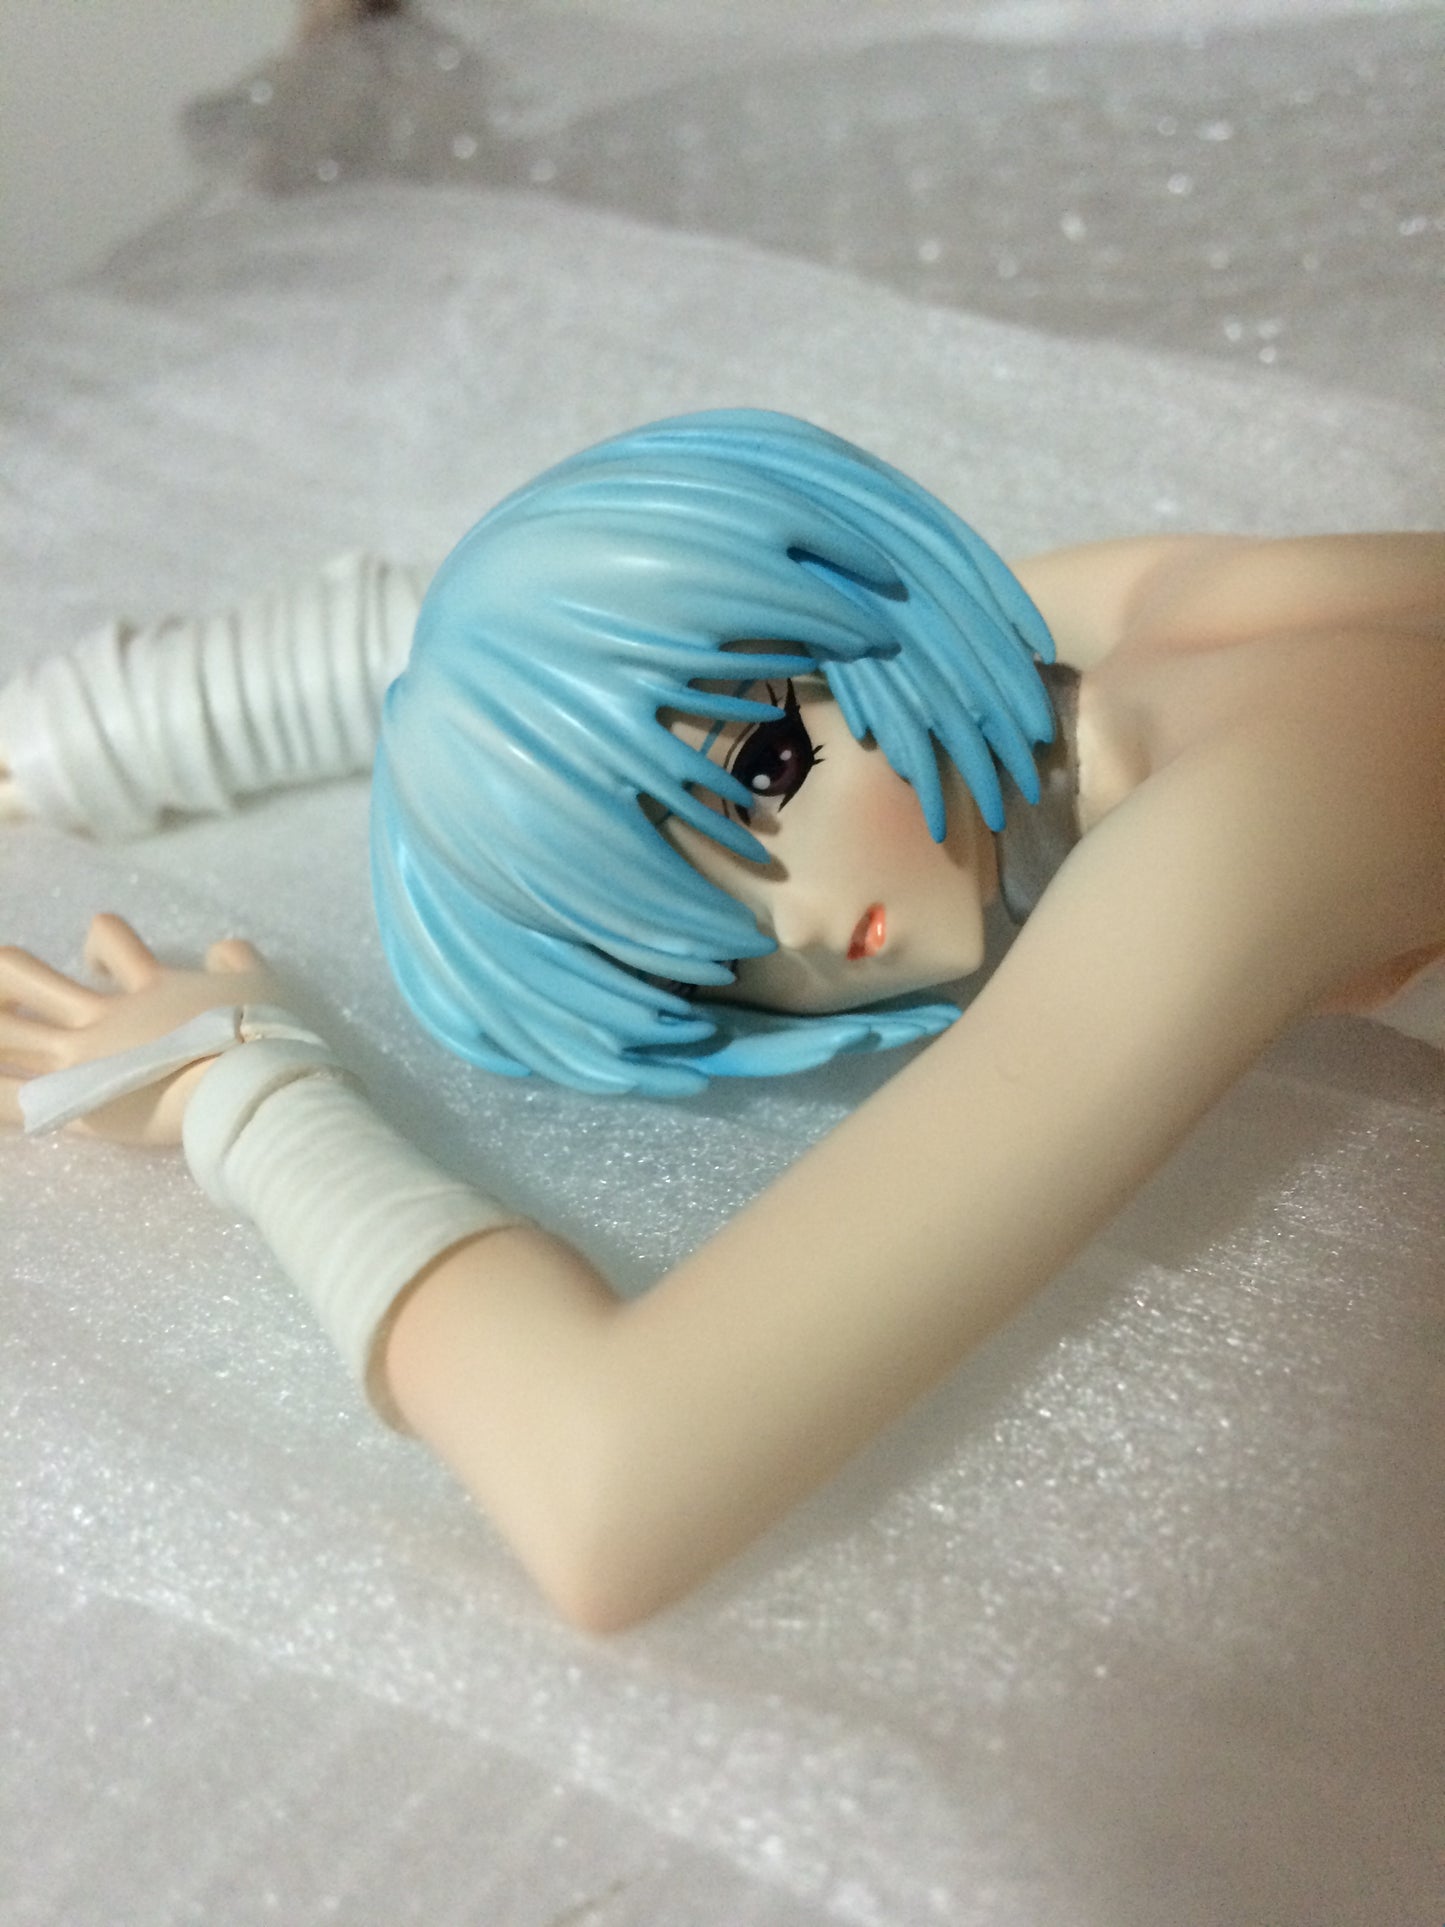 AYANAMI REI 1/6 nude anime figure resin figure girl